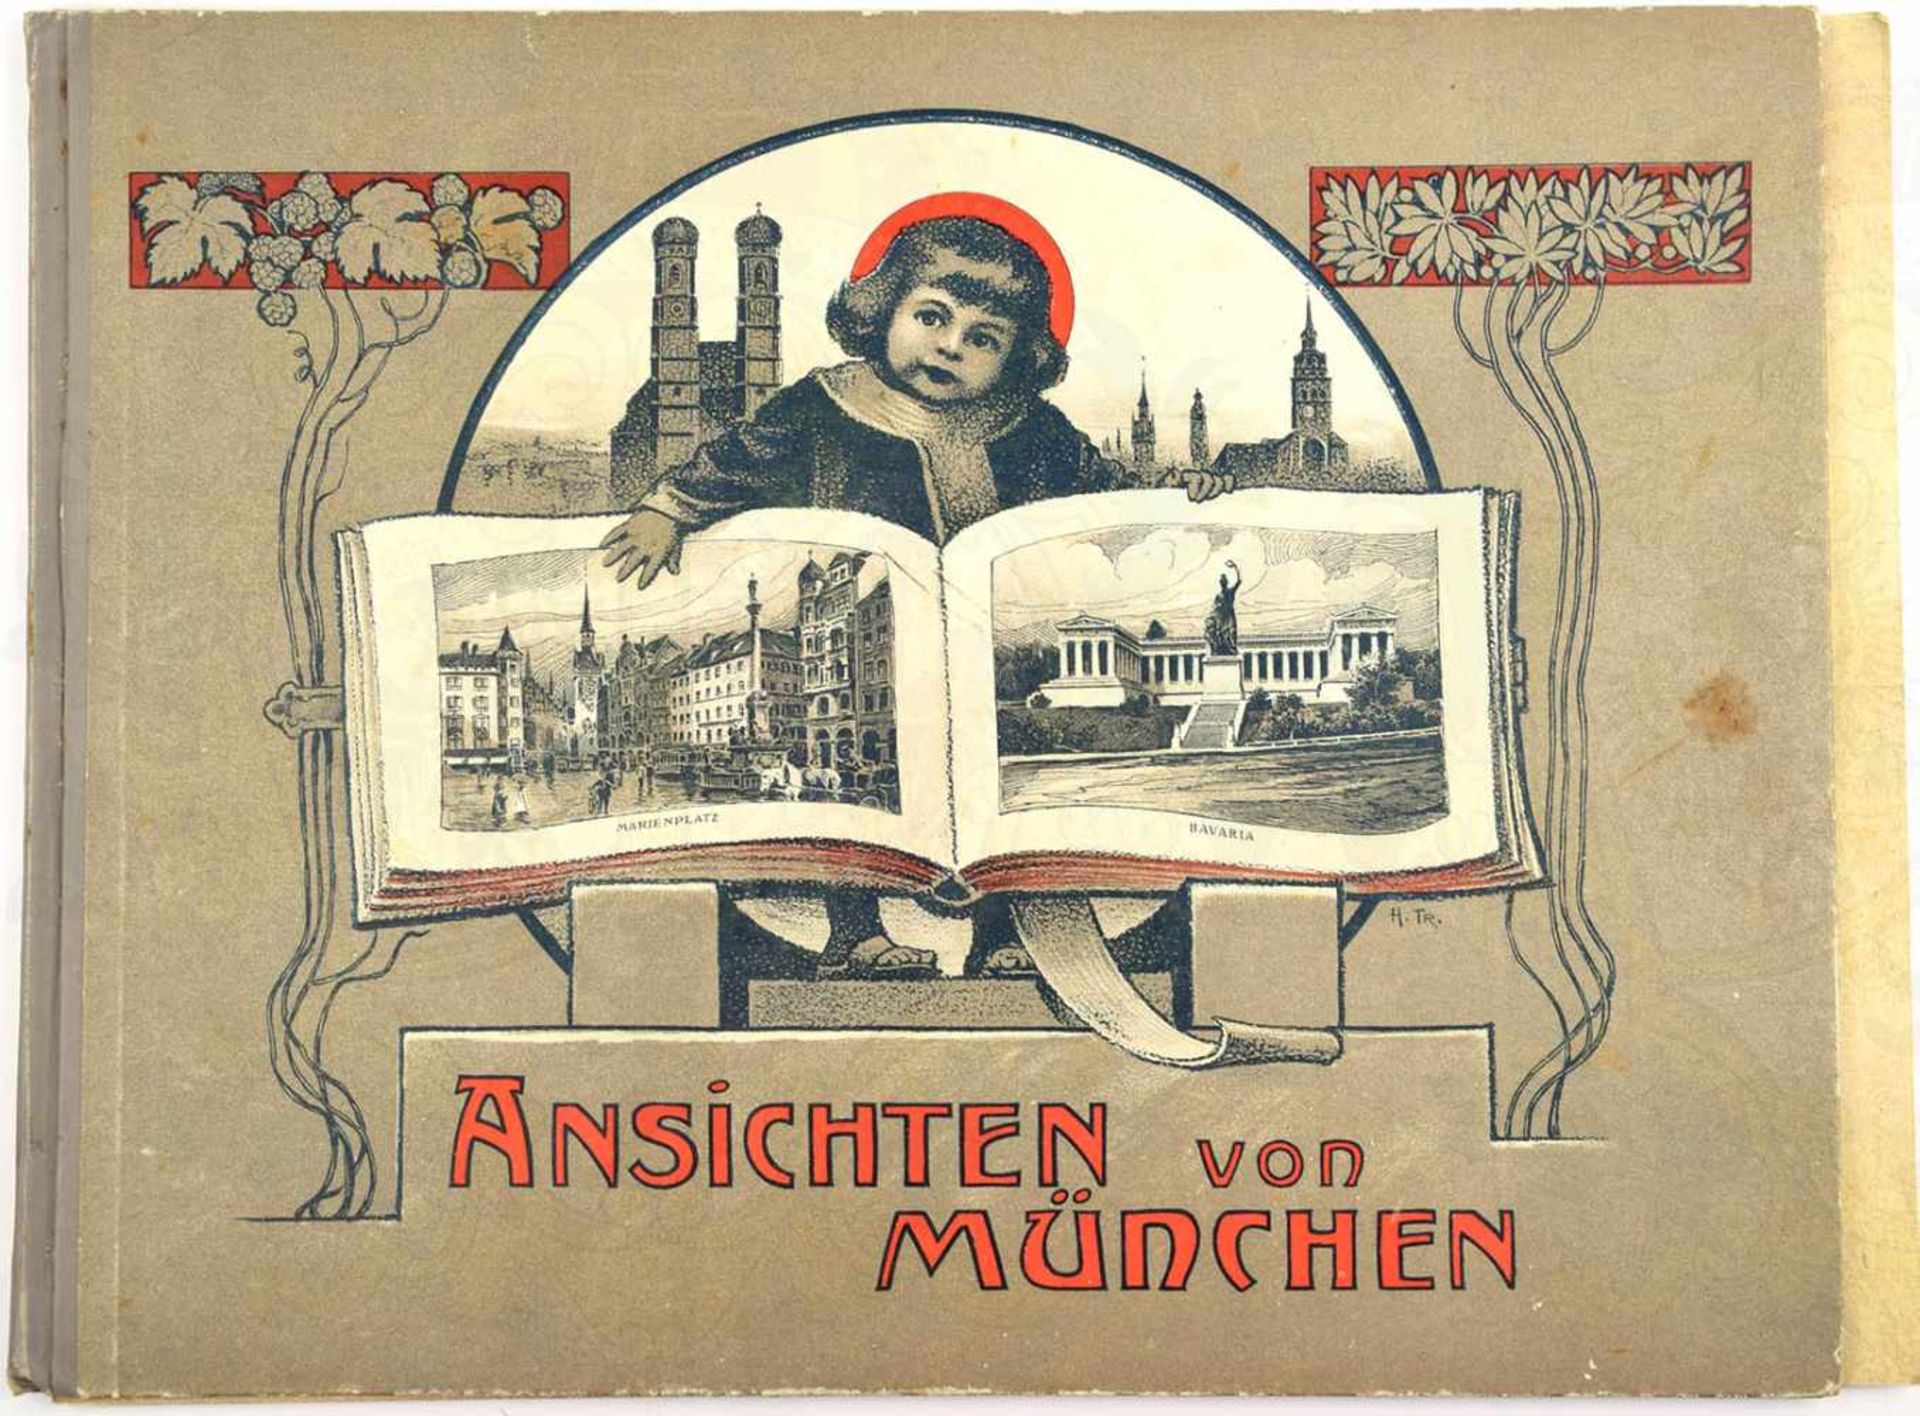 BILDBAND „ANSICHTEN VON MÜNCHEN“, ca. 1905, 32 S. mit ganzseitigen Abb., querf., illustr. HLn.; dazu